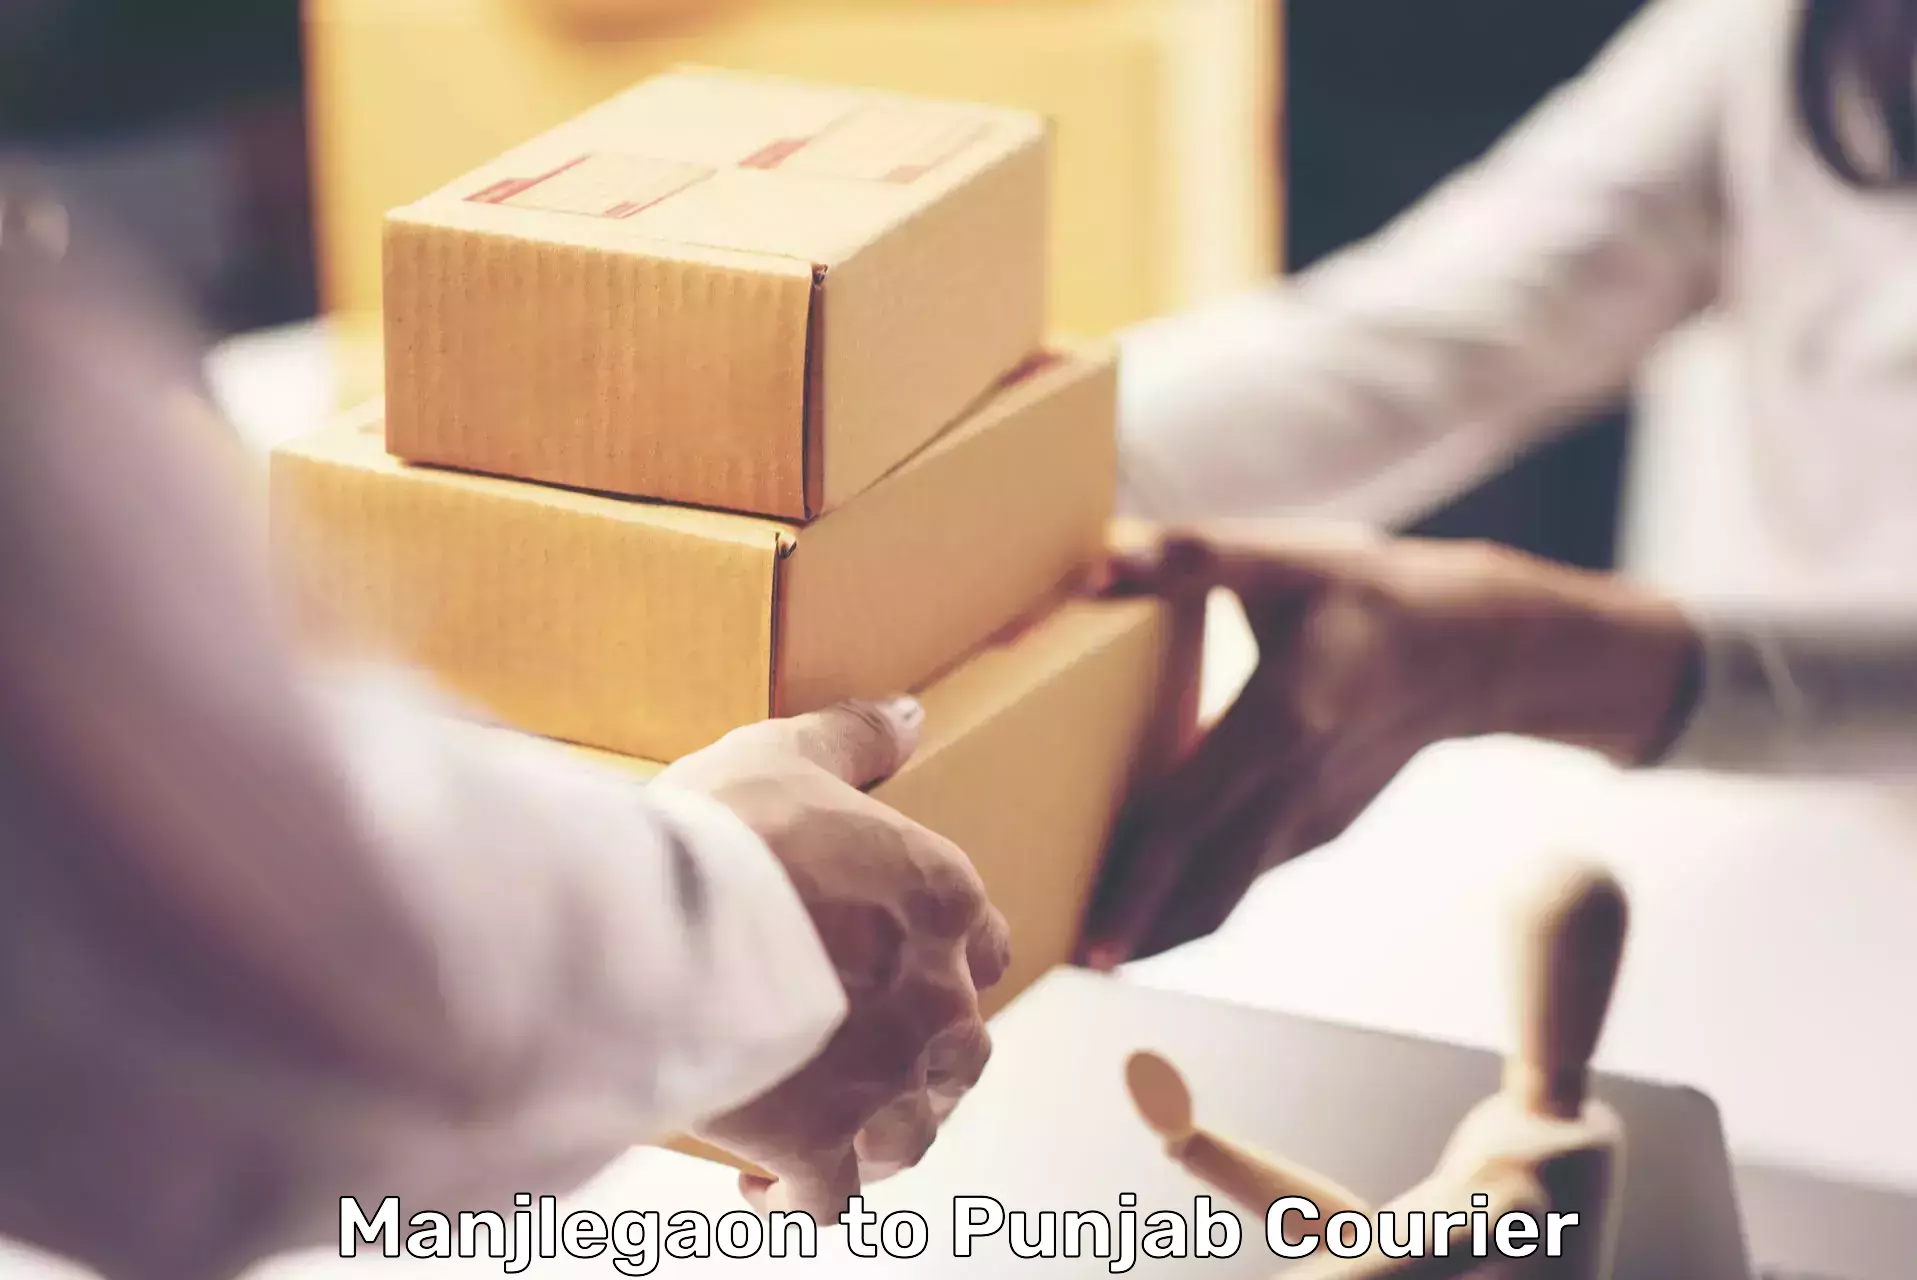 Professional courier handling Manjlegaon to Punjab